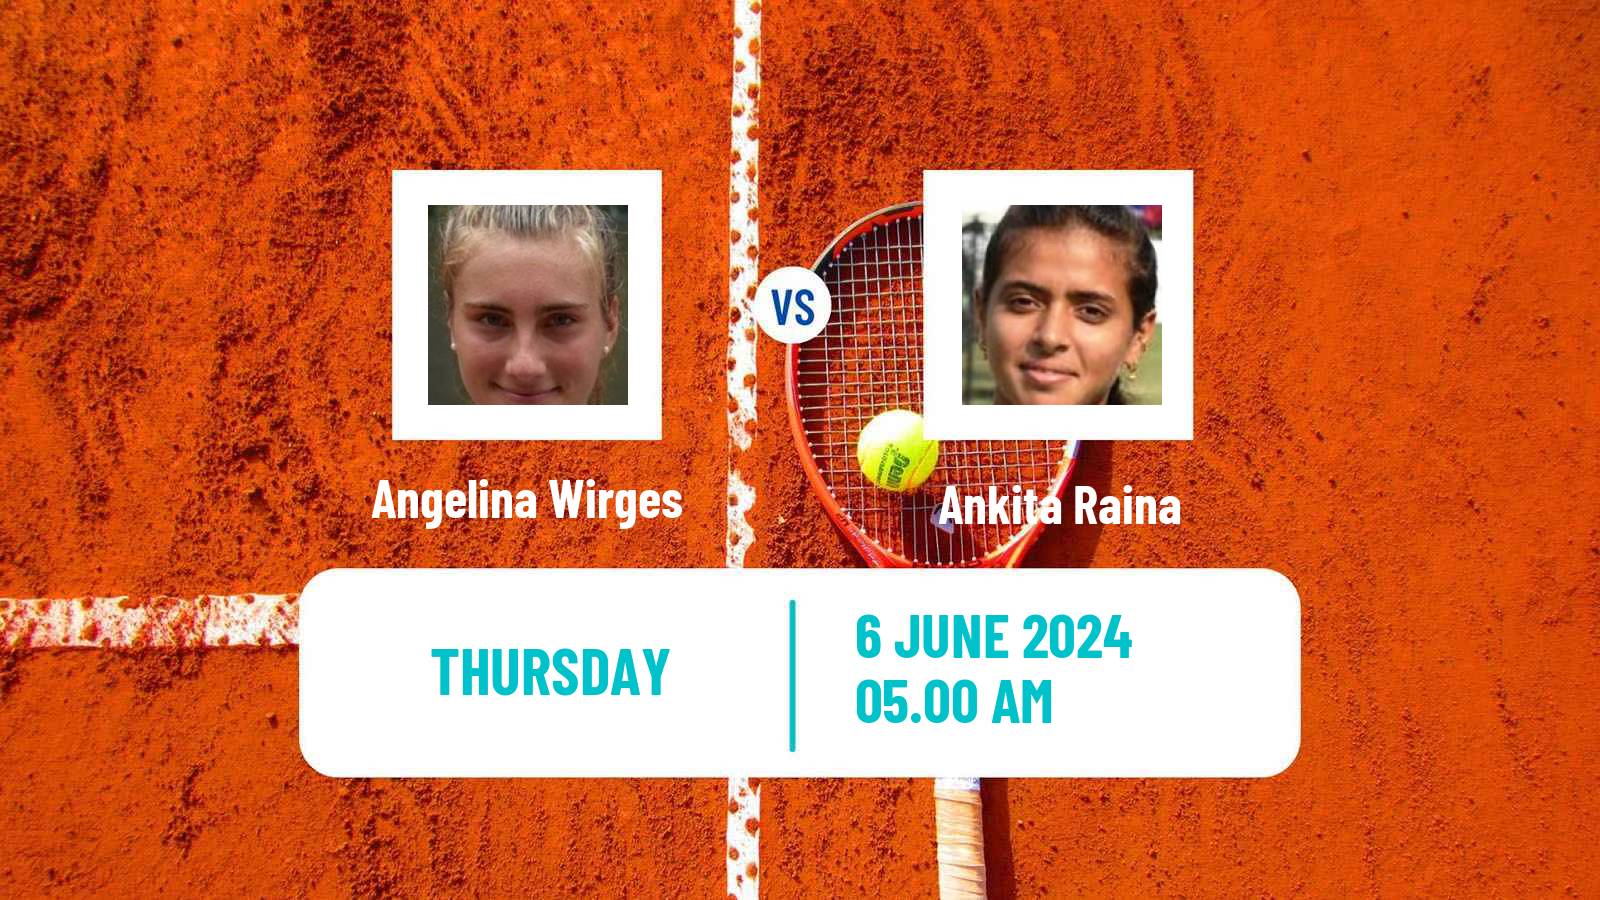 Tennis ITF W50 Montemor O Novo 2 Women Angelina Wirges - Ankita Raina